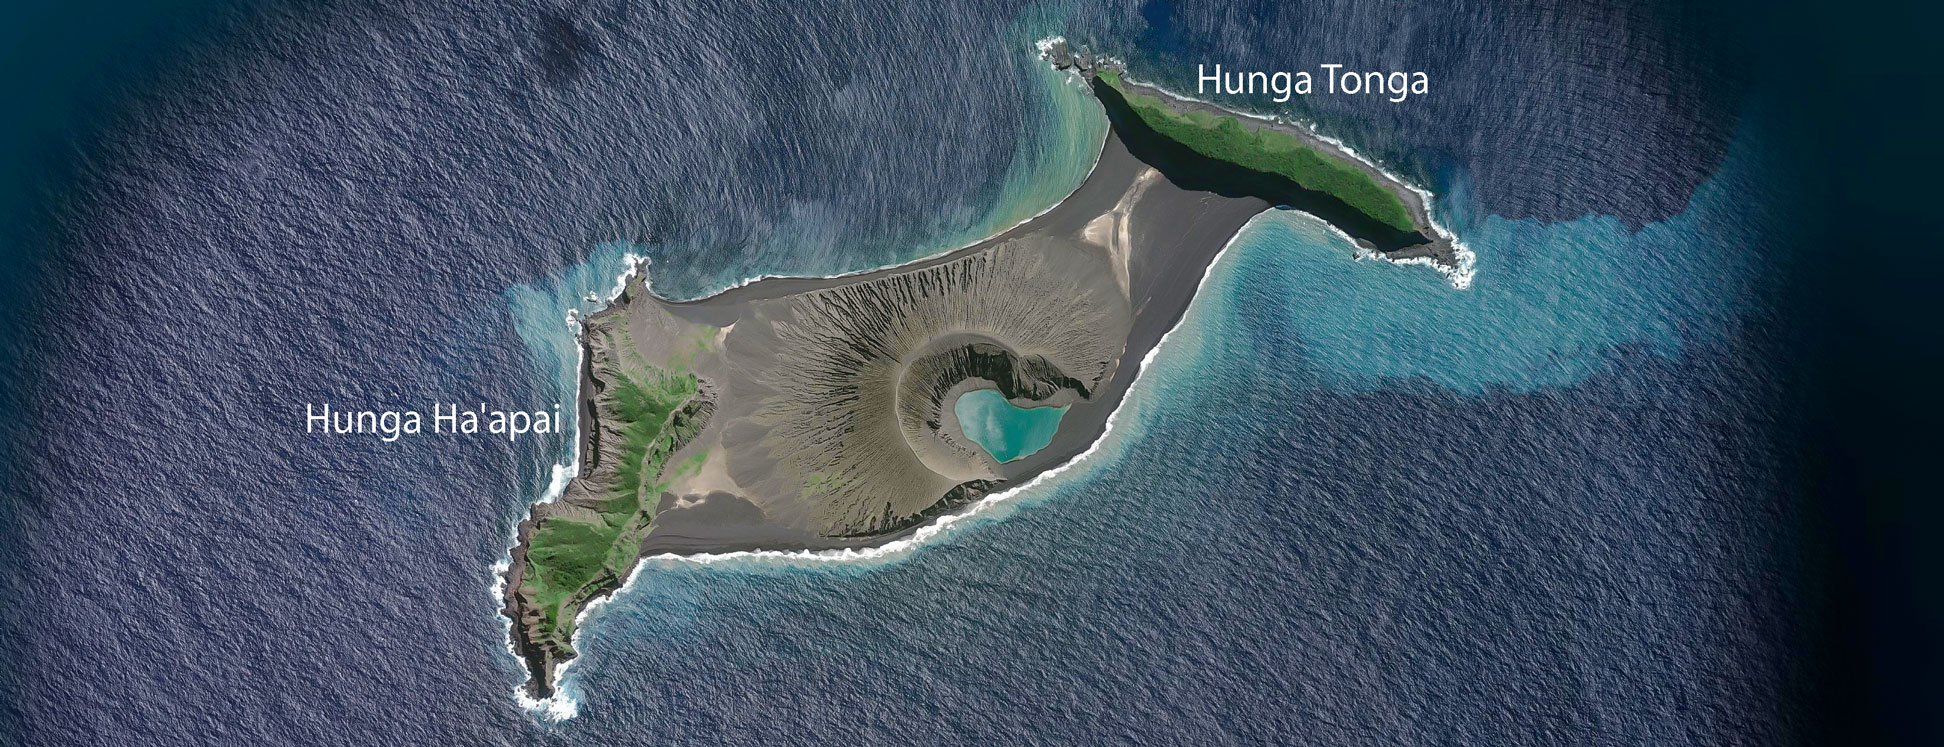 Satellite image of Hunga Tonga and Hunga Ha'apai, Tonga